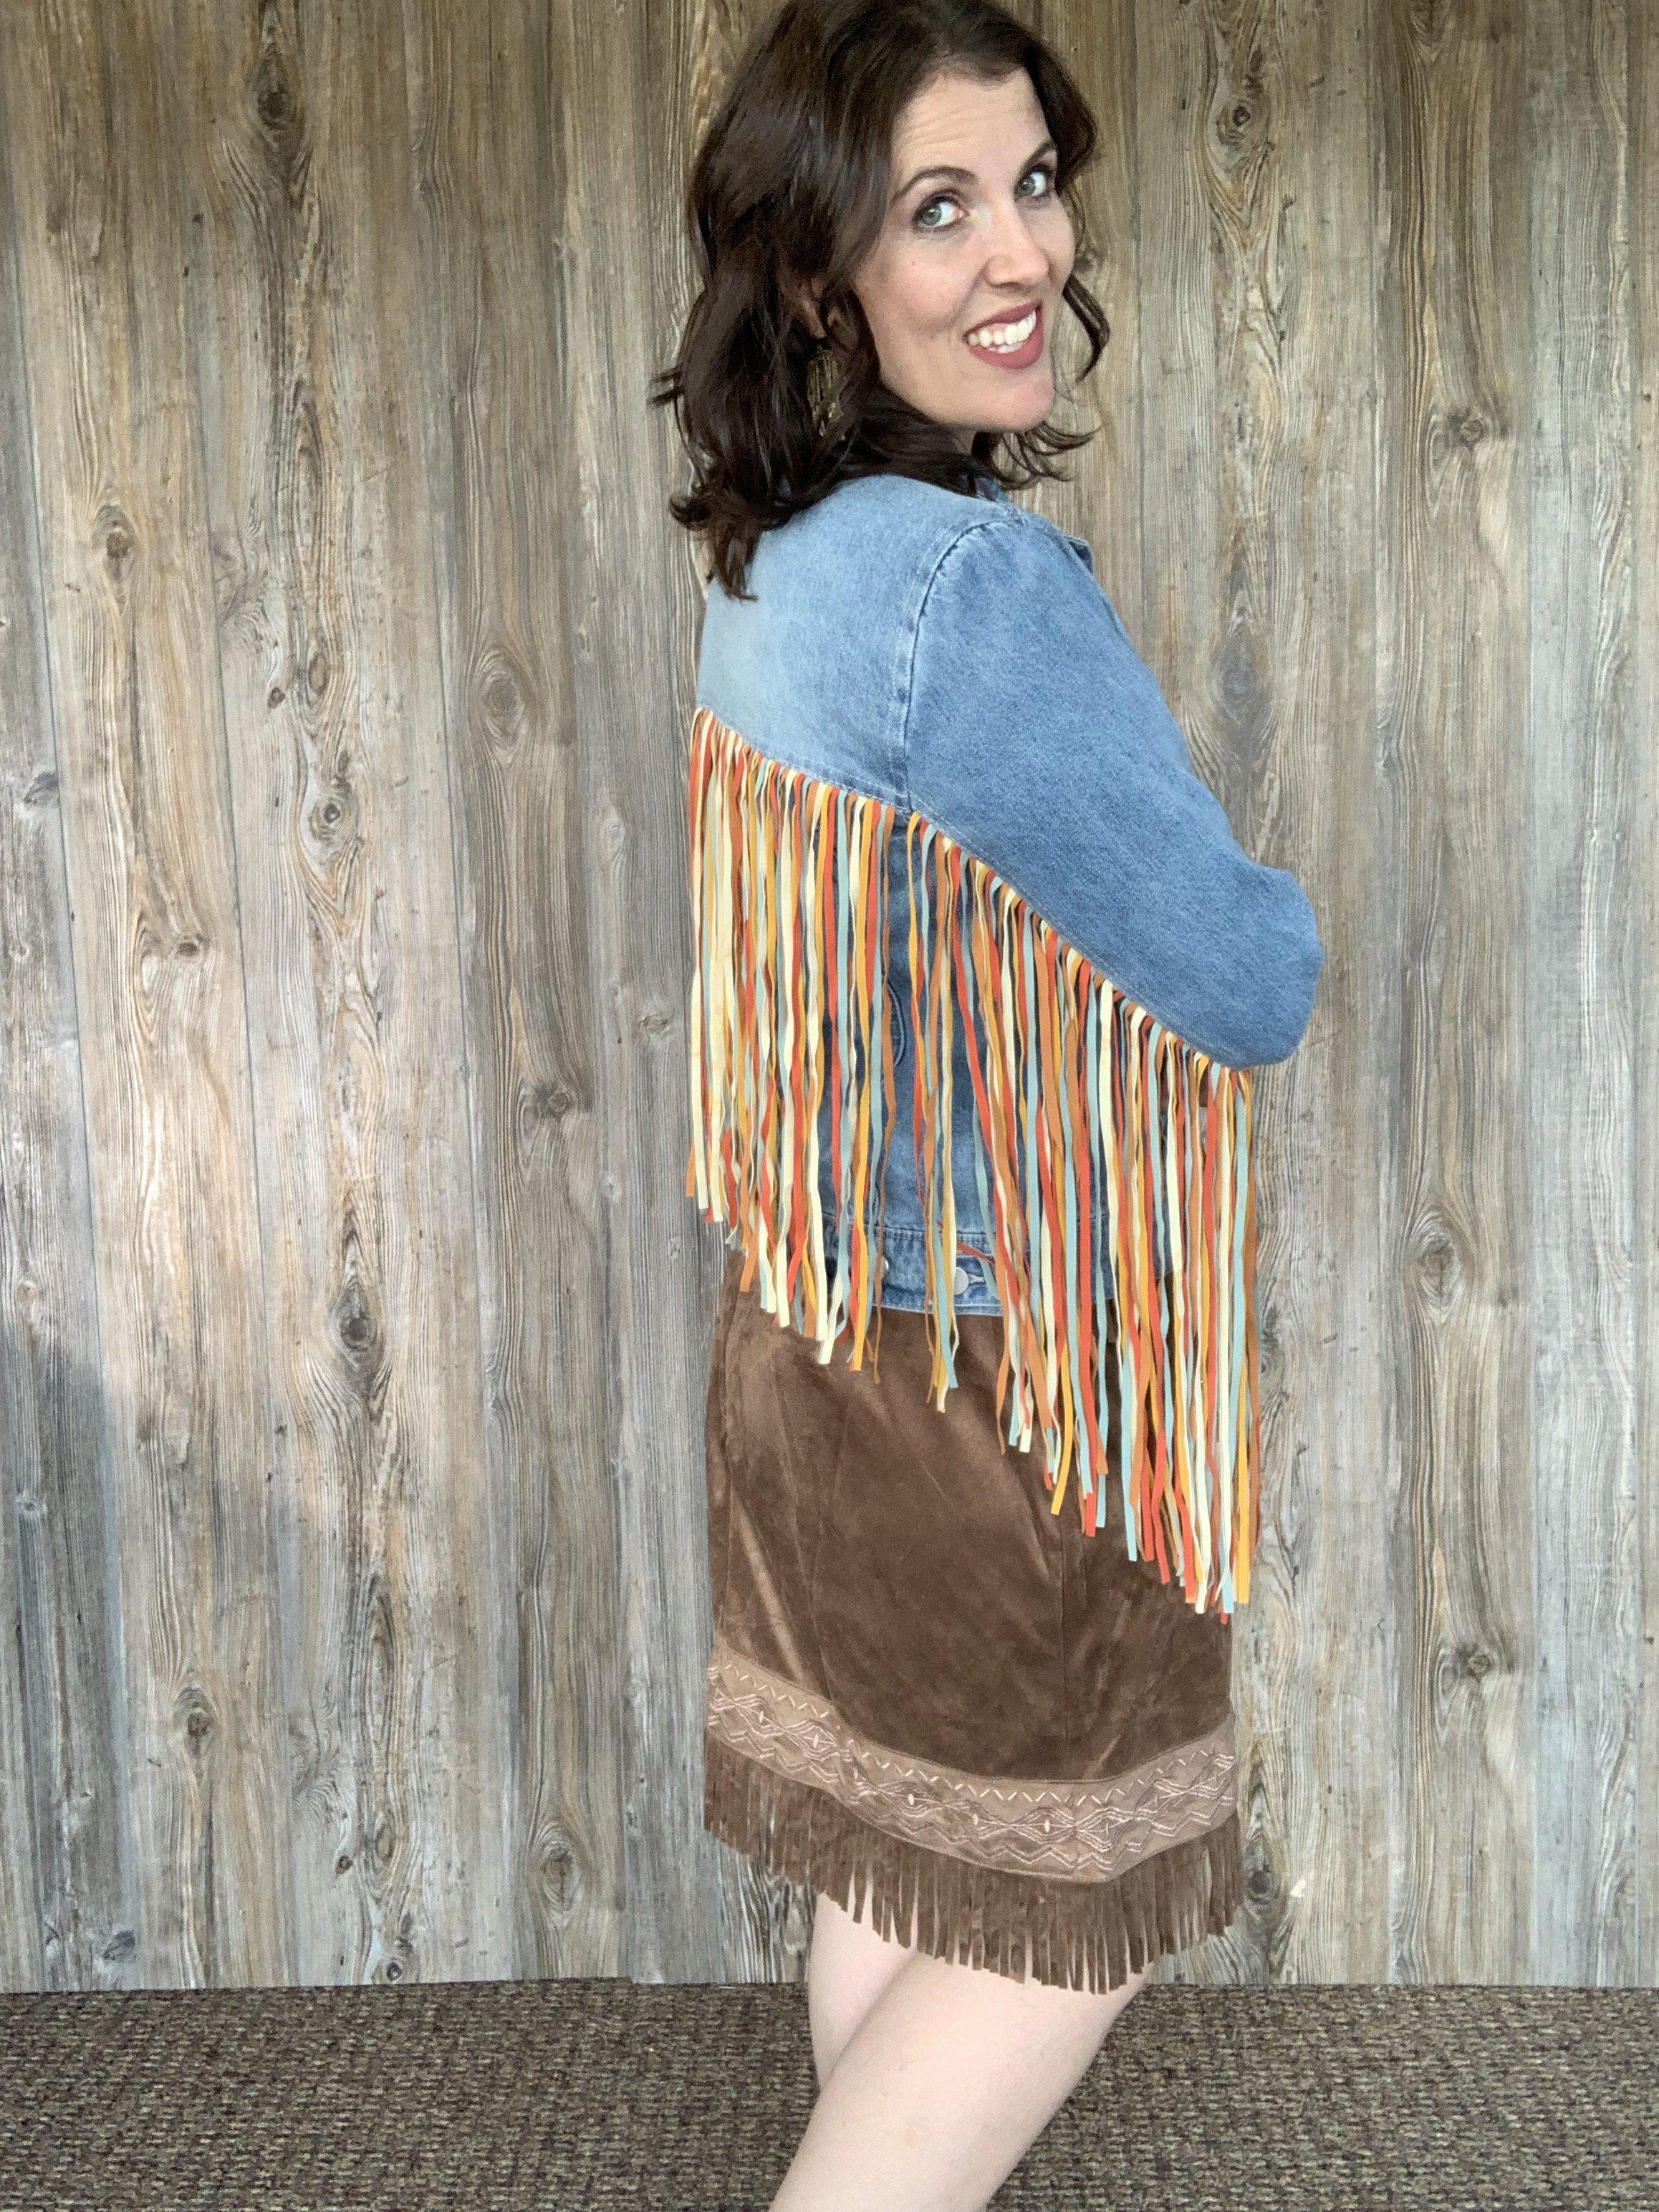 The Cheyenne Skirt